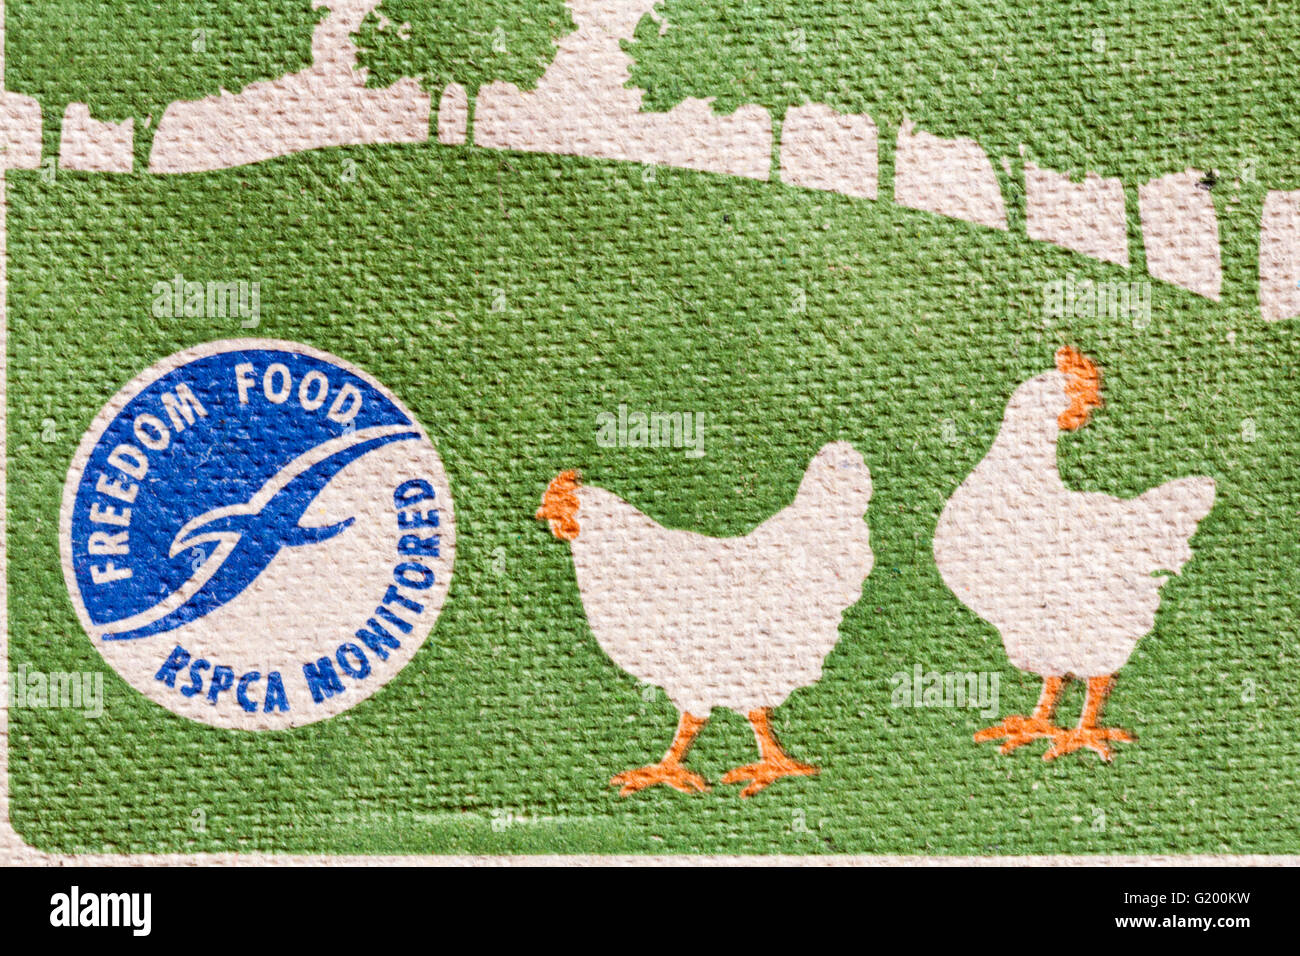 La RSPCA Freedom Food surveillés - informations sur la gamme de carton de 6 oeufs par Sainsburys forestiers Banque D'Images